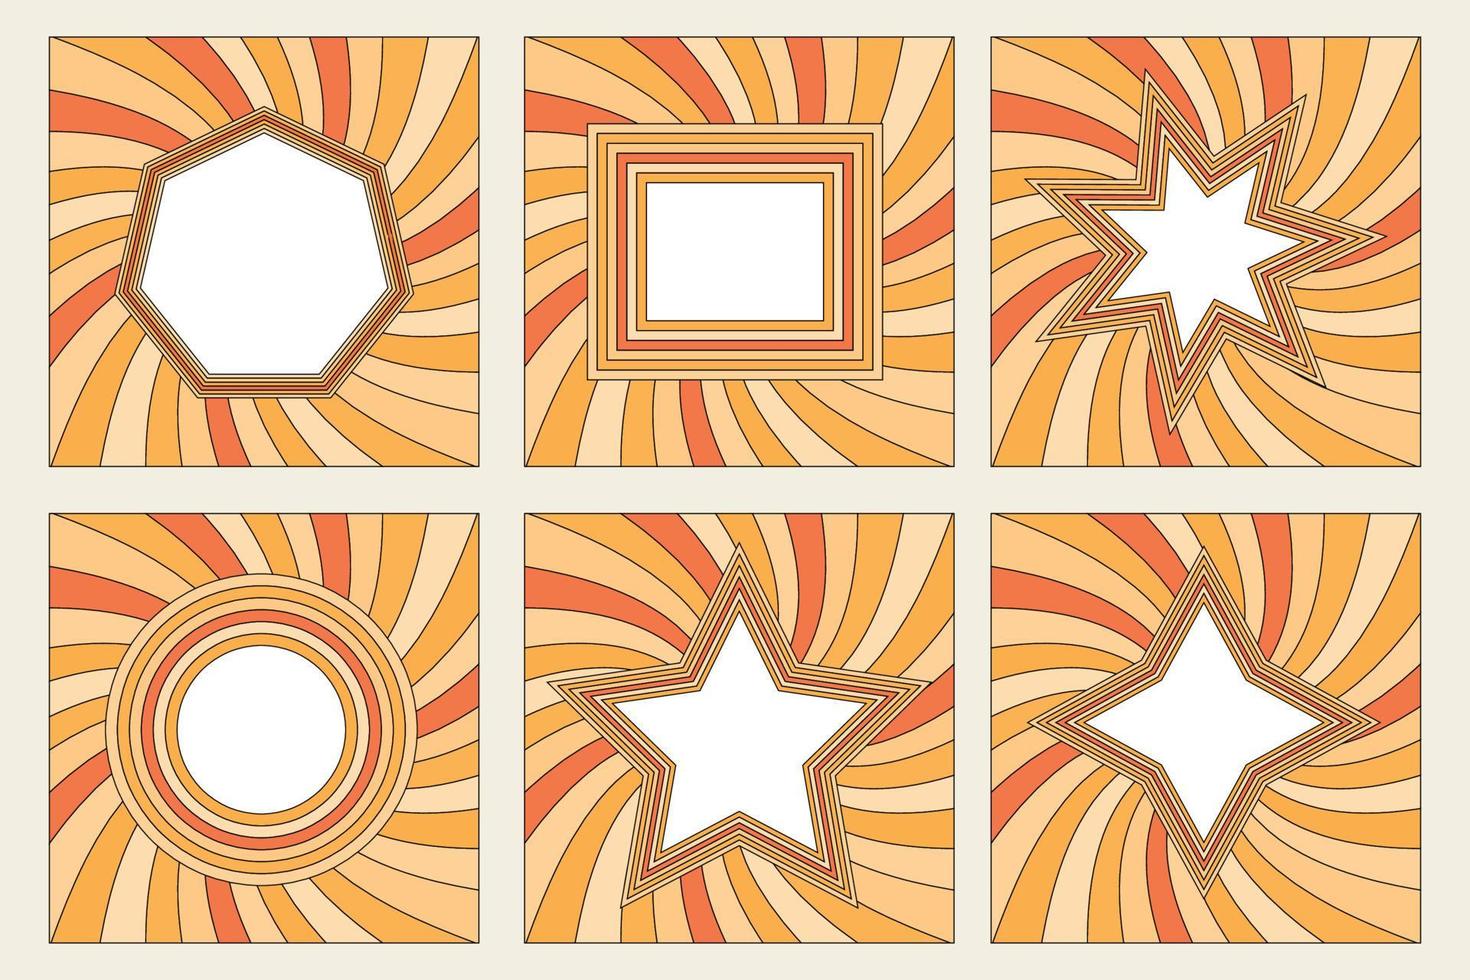 conjunto de marcos de arcoíris en estilo hippie de la década de 1970. patrones retro vintage 70 surco. colección de marco redondo, estrella, rombo y cuadrado. diseño de ilustración vectorial aislado. vector